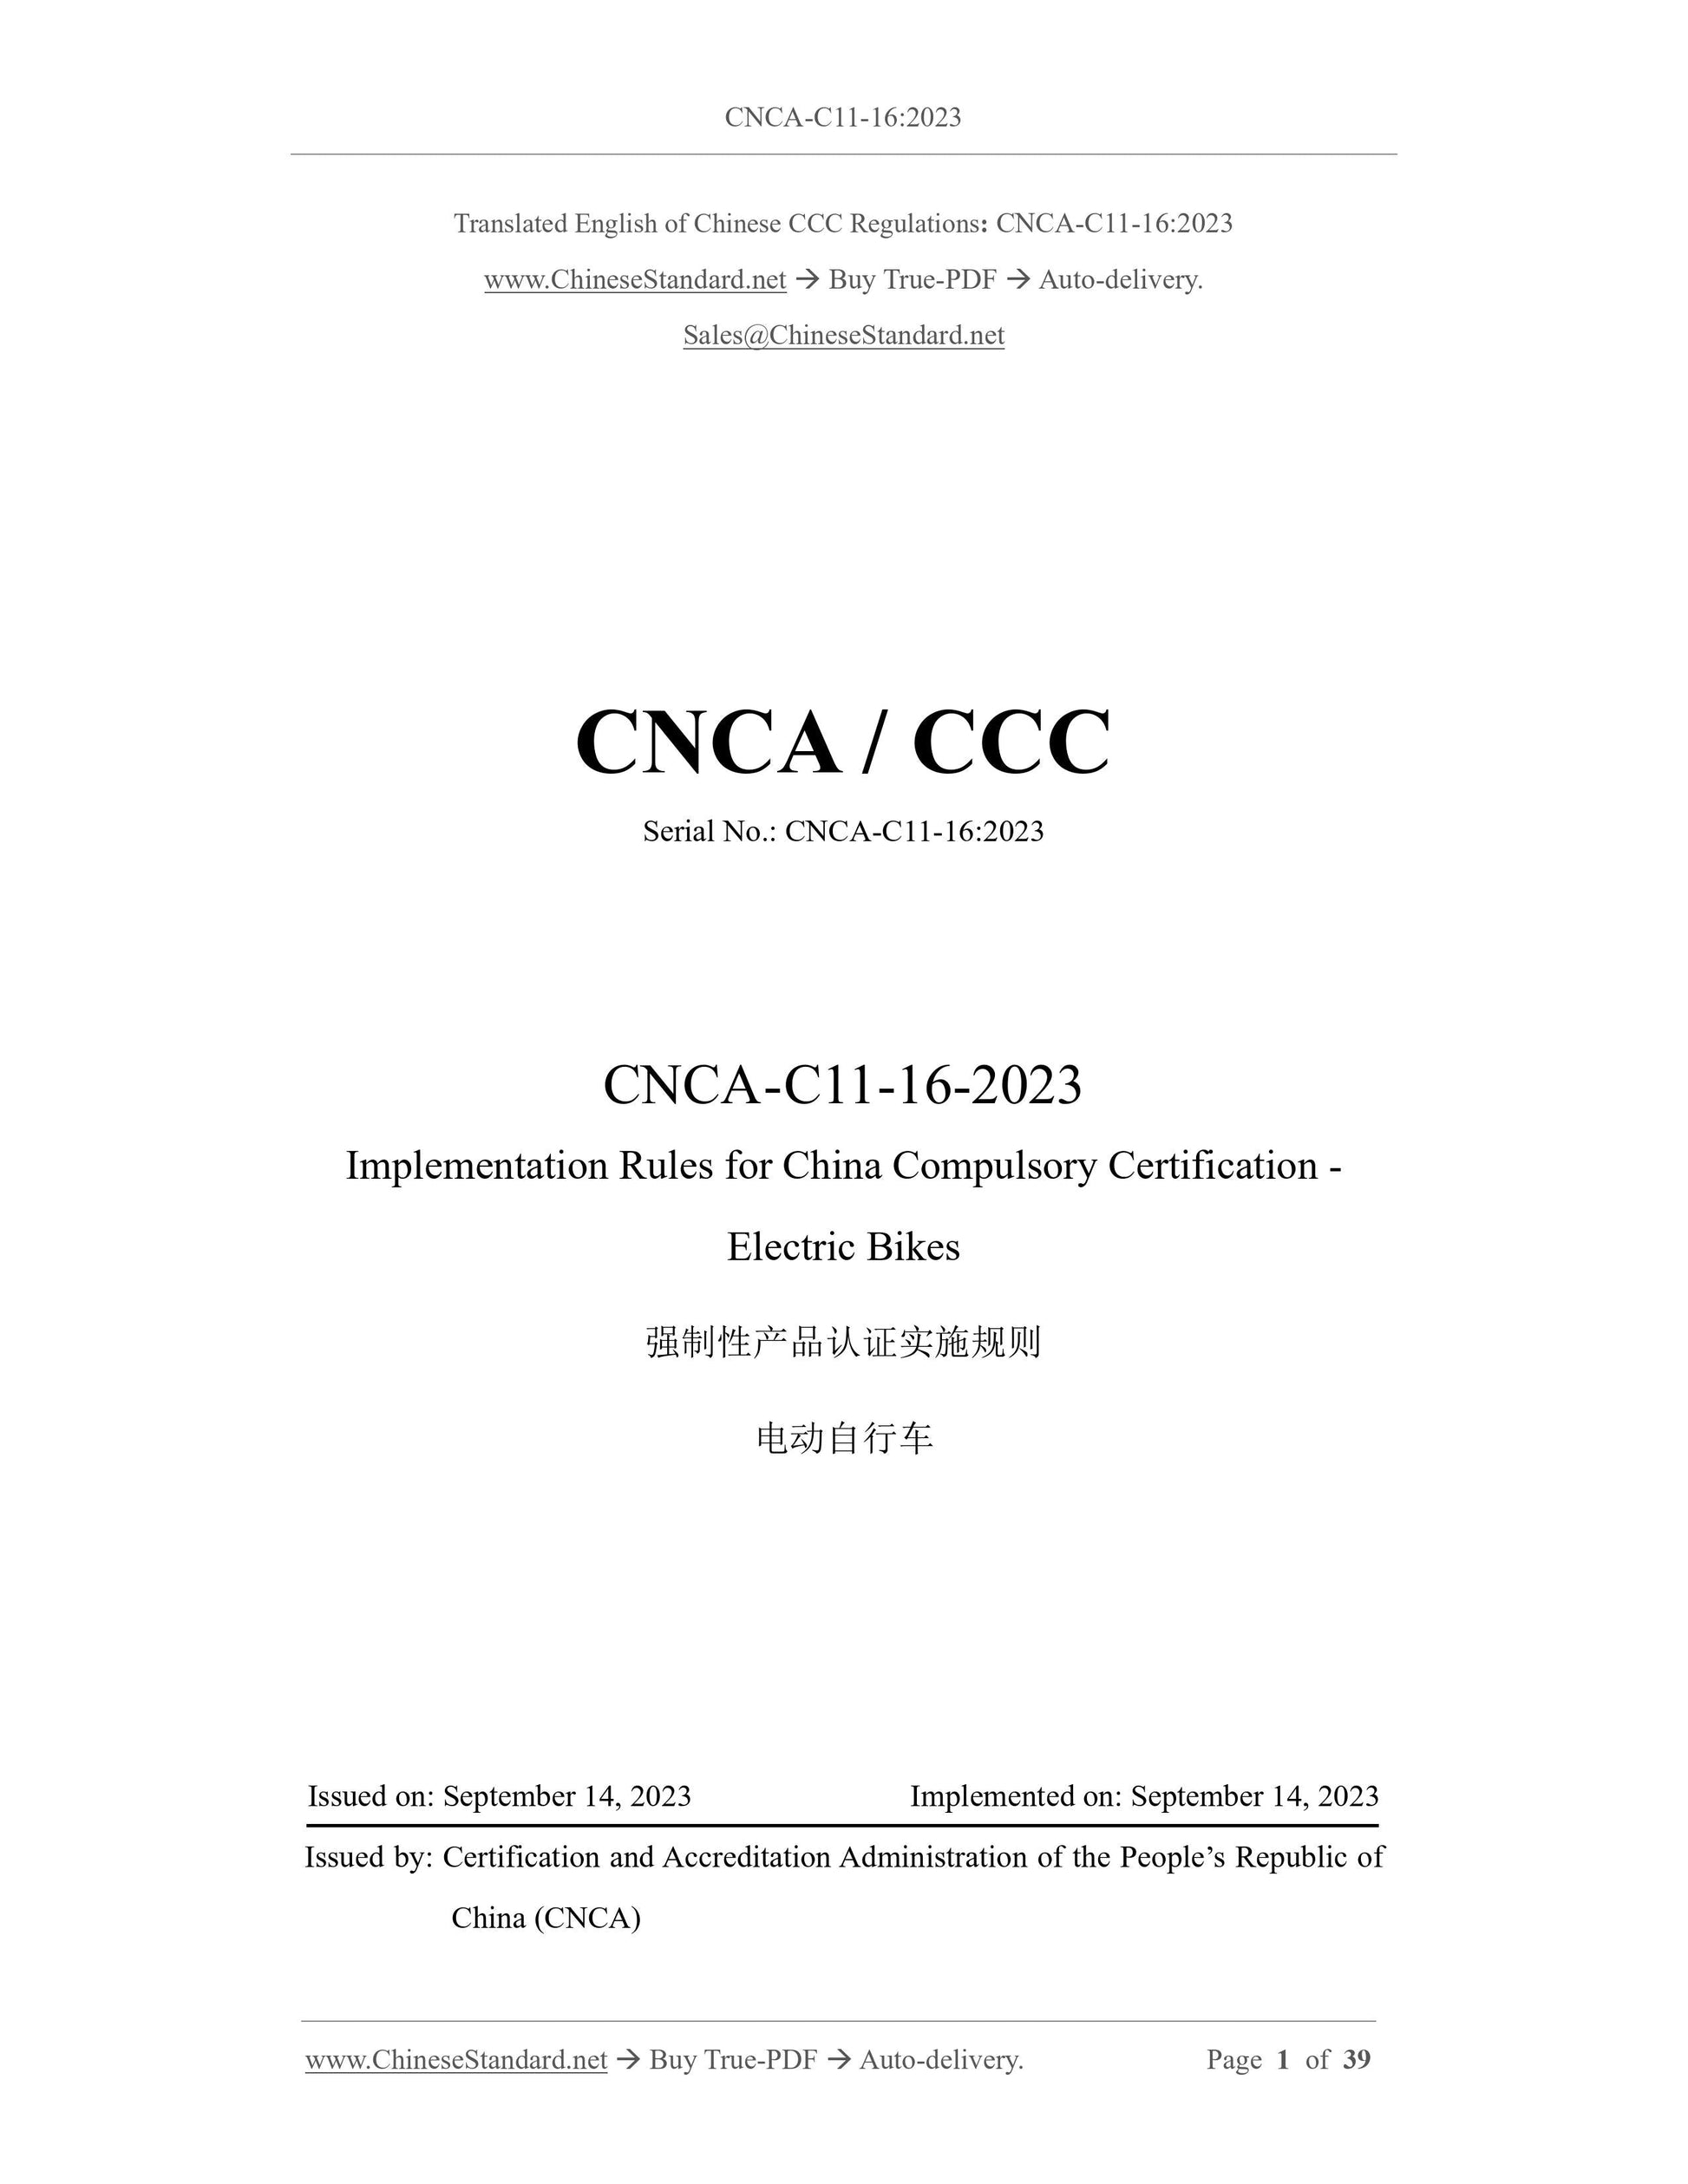 CNCA C11-16-2023 Page 1